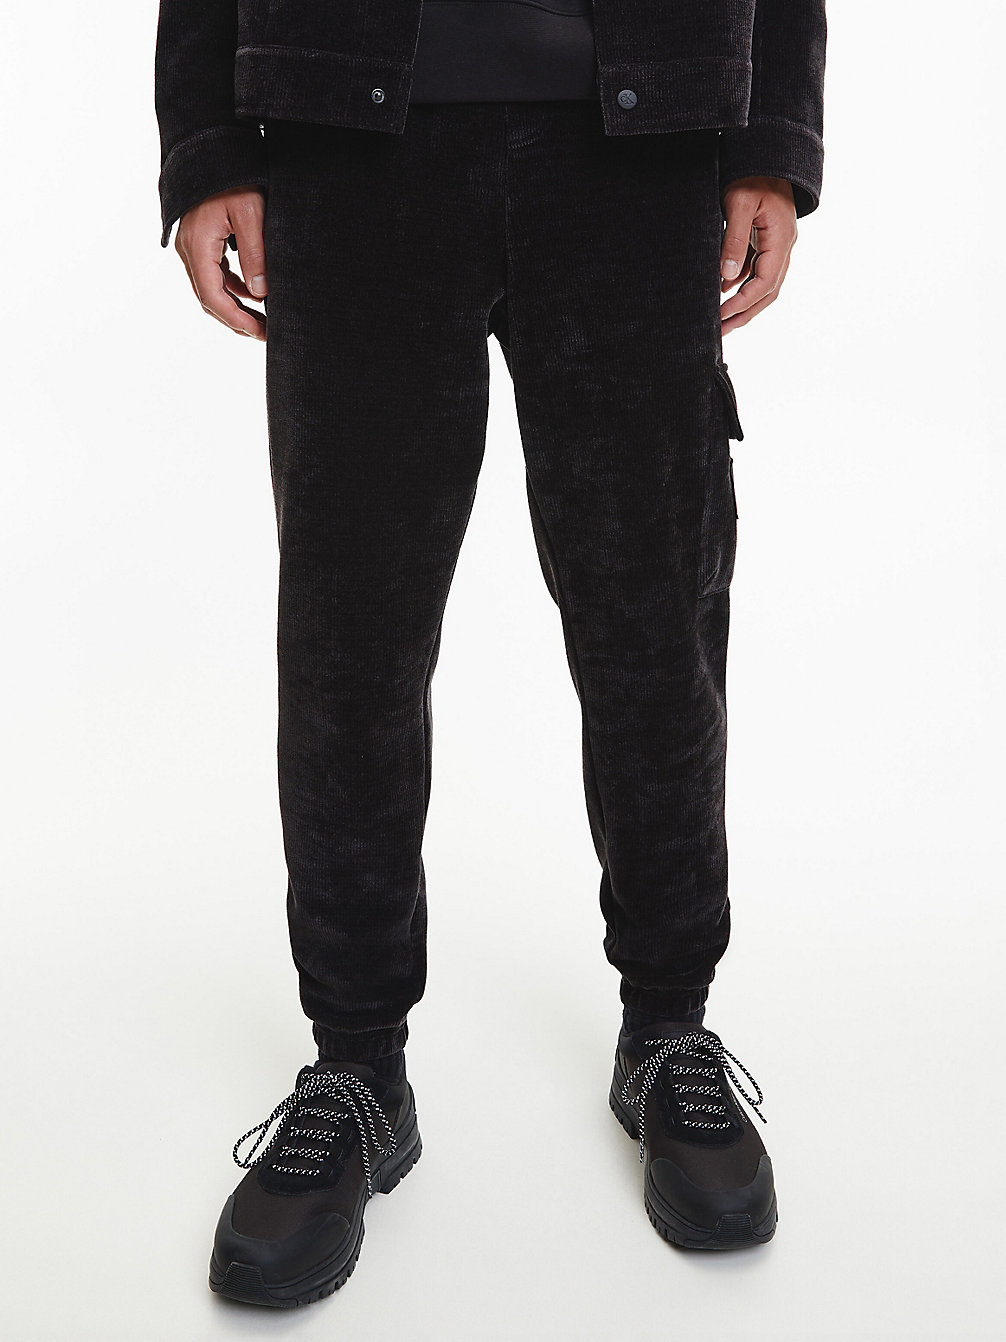 CK BLACK > Spodnie Dresowe Z Aksamitu I Sztruksu > undefined Mężczyźni - Calvin Klein